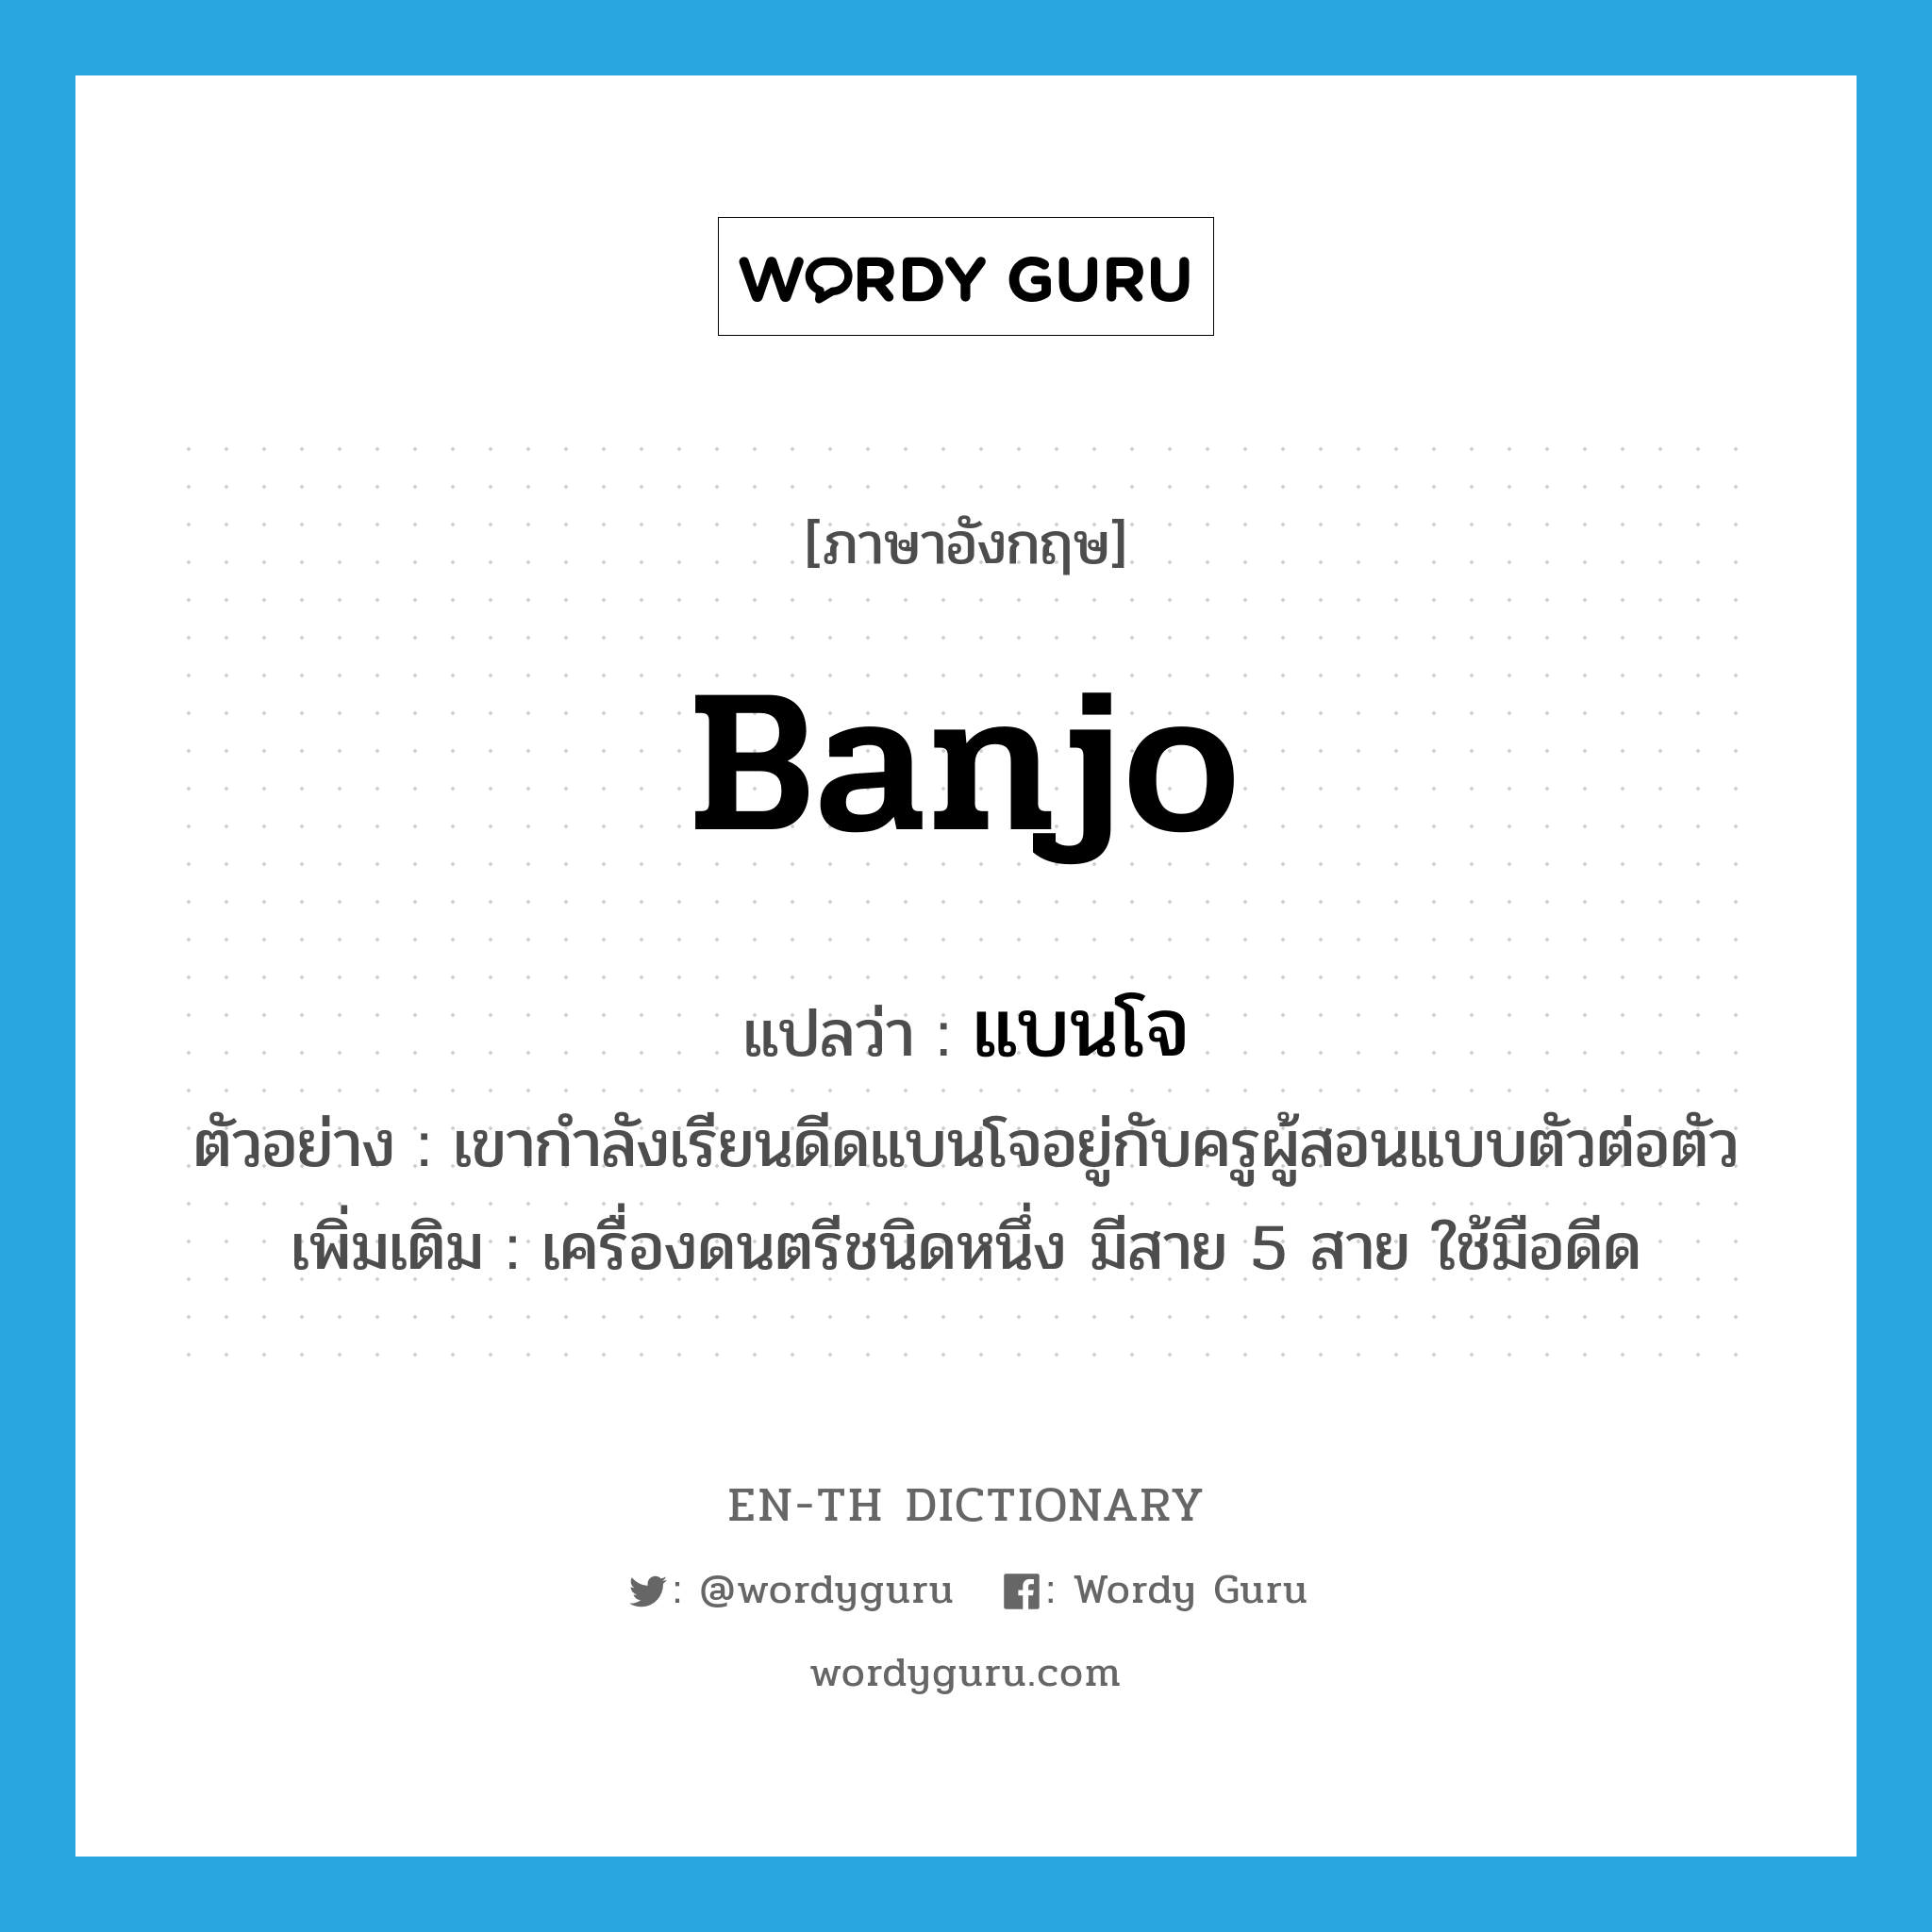 banjo แปลว่า?, คำศัพท์ภาษาอังกฤษ banjo แปลว่า แบนโจ ประเภท N ตัวอย่าง เขากำลังเรียนดีดแบนโจอยู่กับครูผู้สอนแบบตัวต่อตัว เพิ่มเติม เครื่องดนตรีชนิดหนึ่ง มีสาย 5 สาย ใช้มือดีด หมวด N